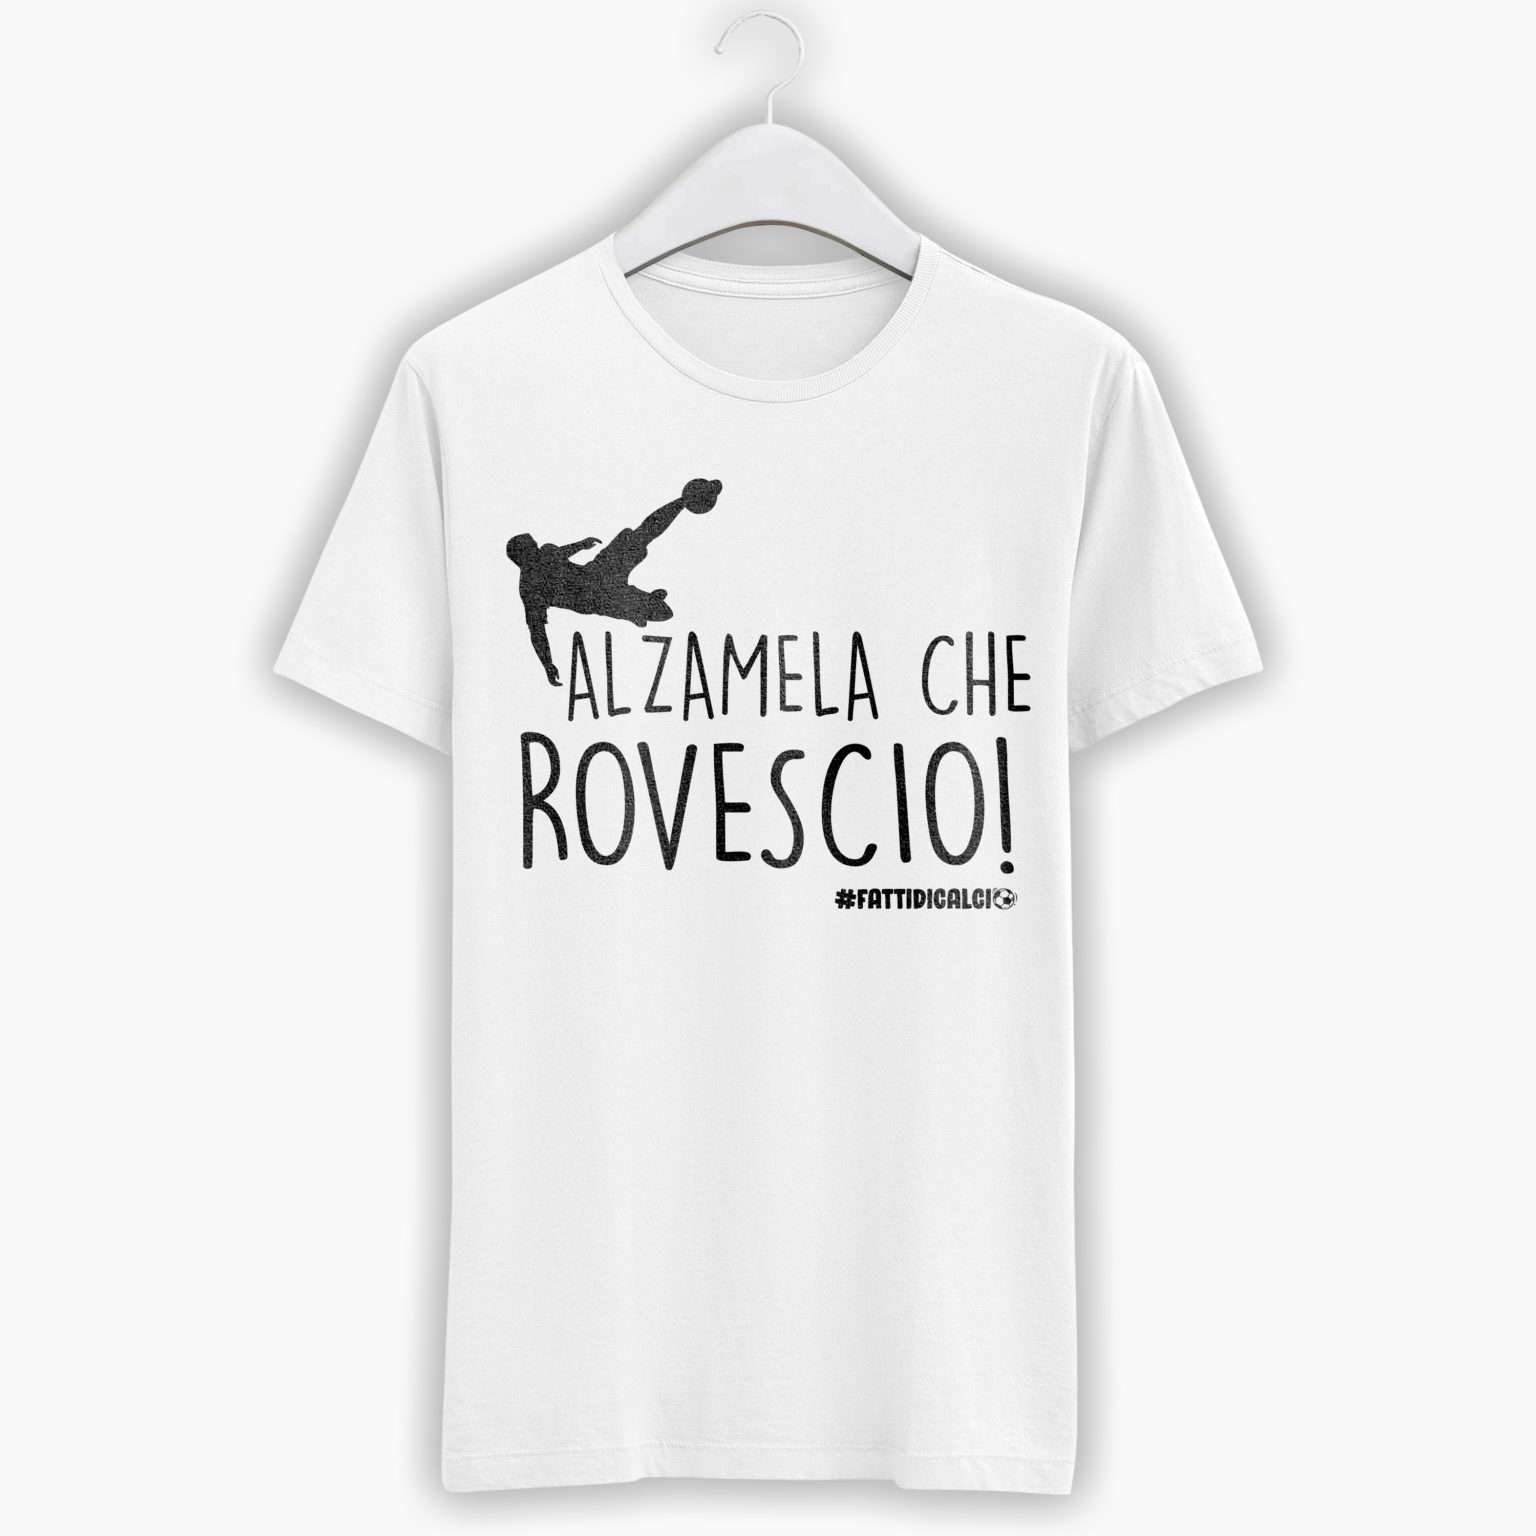 T-Shirt Uomo Calcio – Alzamela che rovescio!